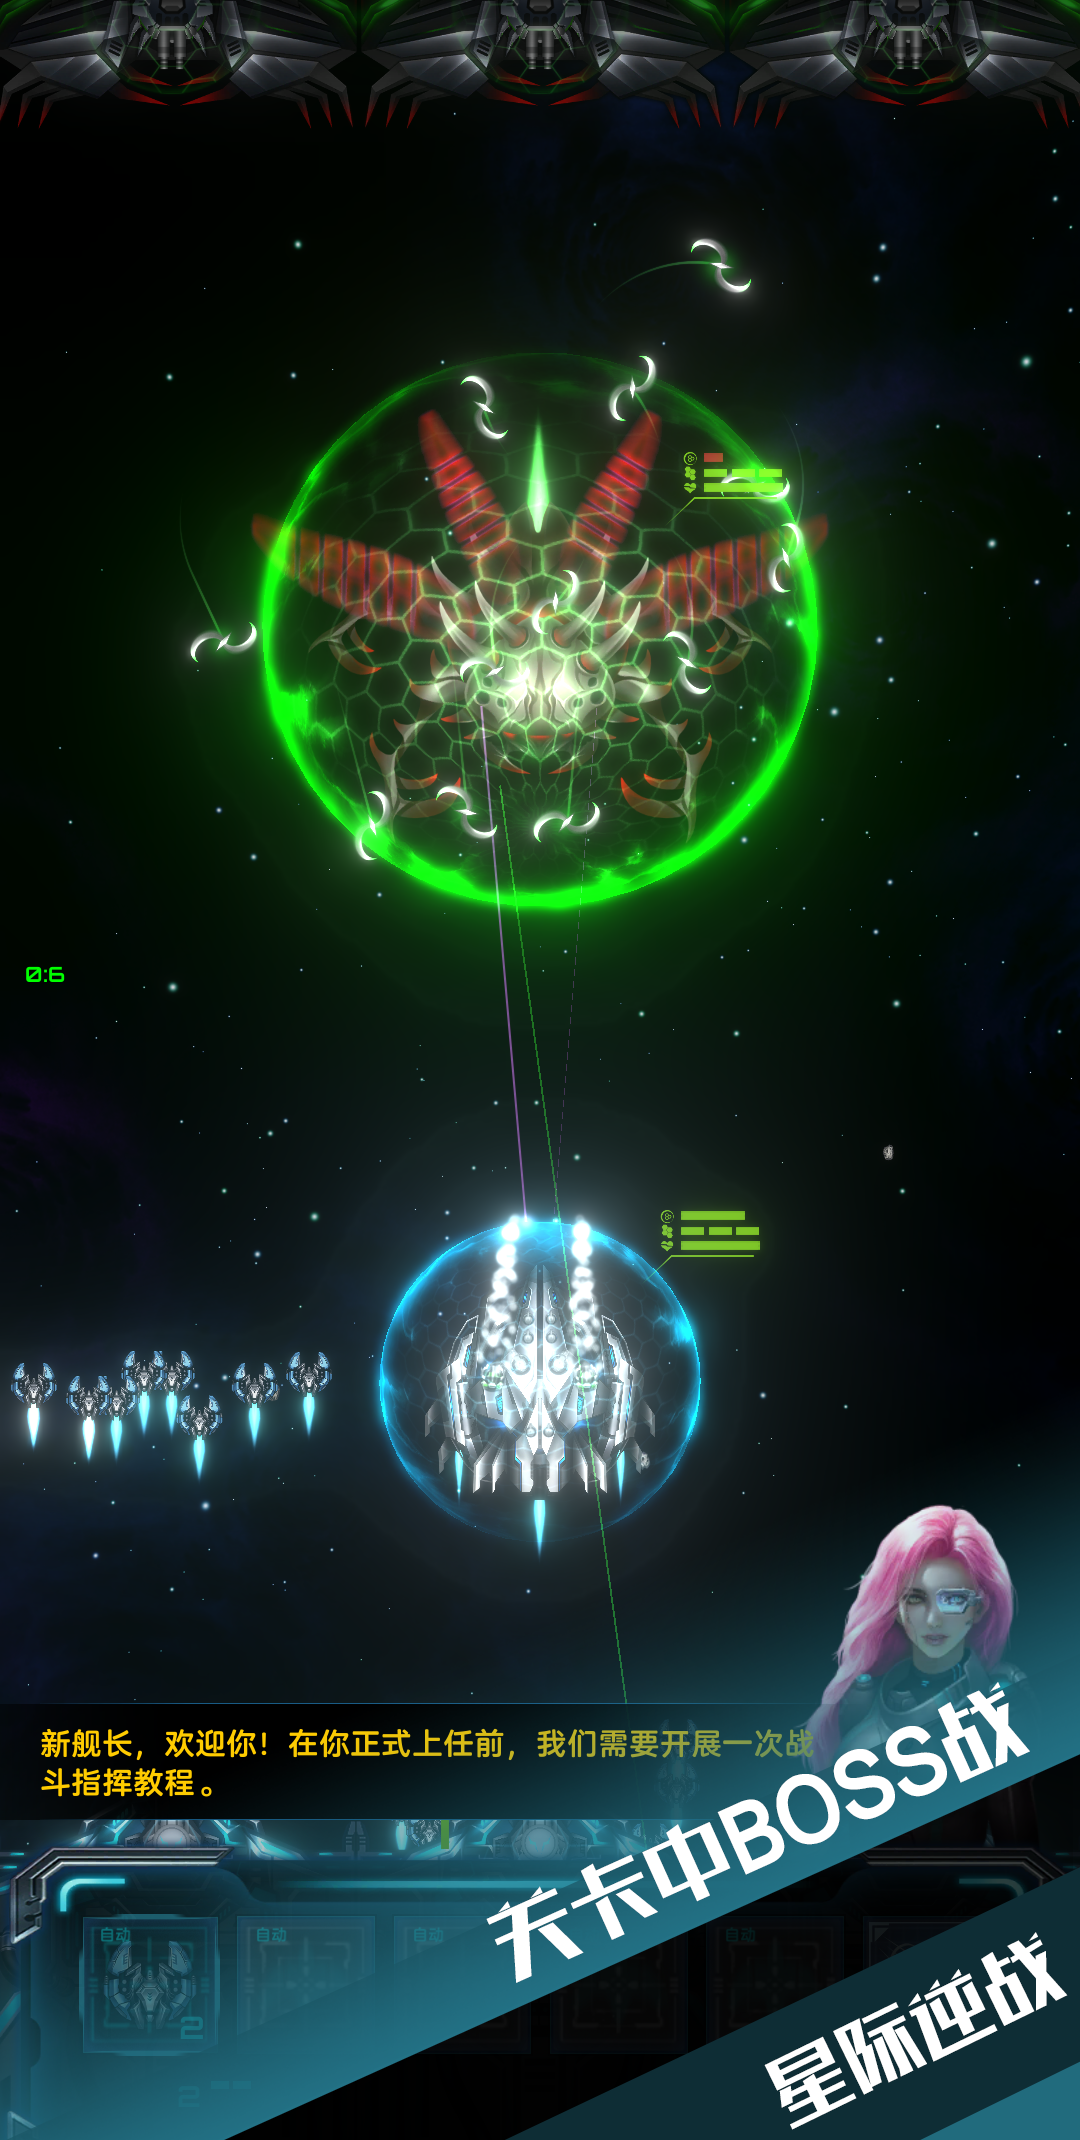 Screenshot 1 of Guerra das Estrelas 